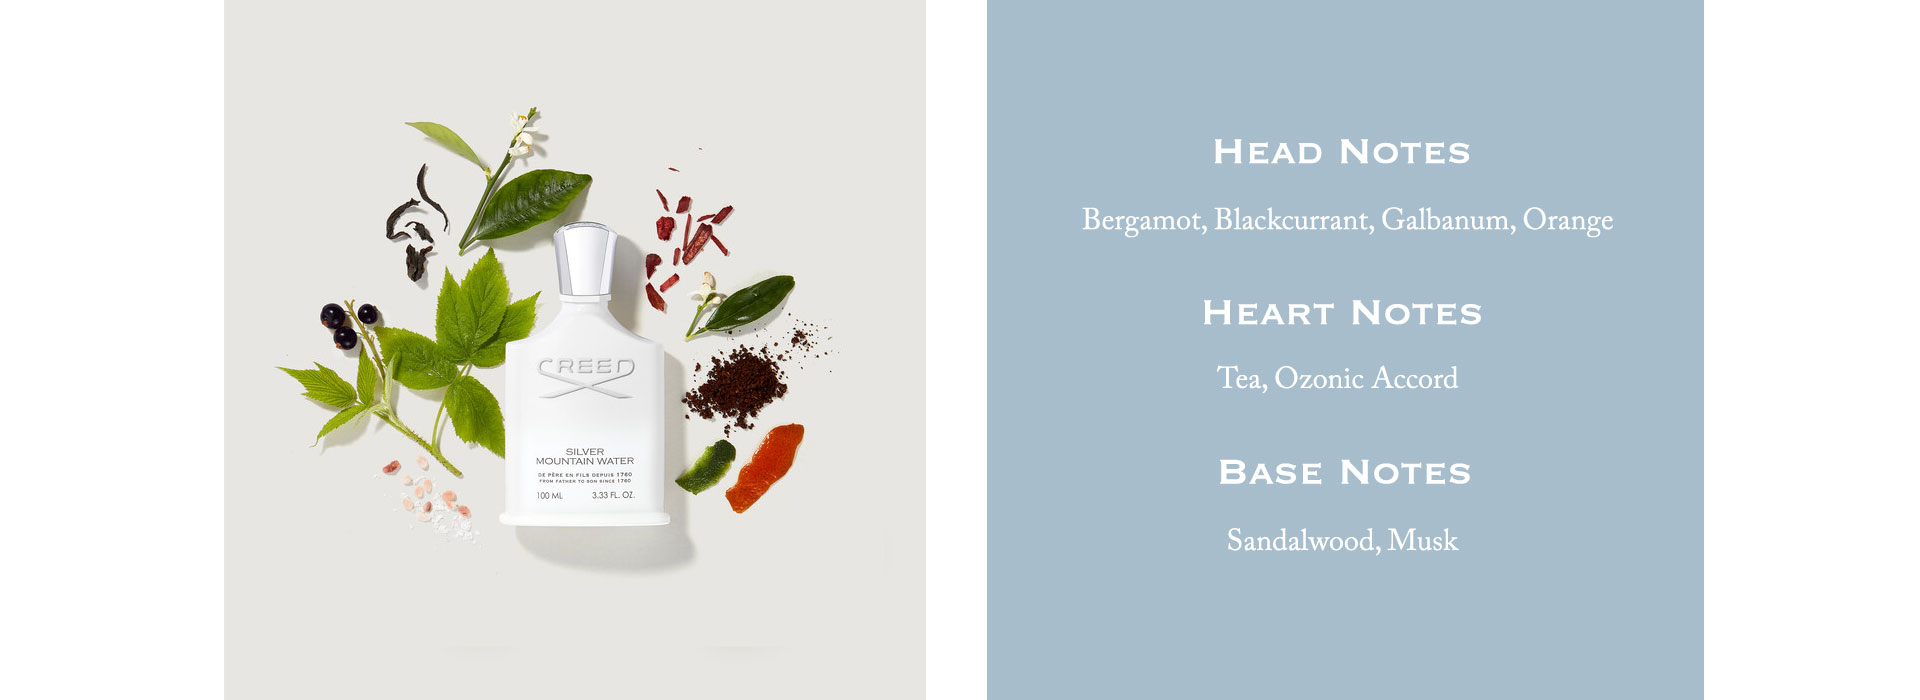 Head Notes: Bergamot, Blackcurrant, Galbanum, Orange. Heart Notes: Tea, Ozonic Accord. Base Notes: Sandalwood, Musk.